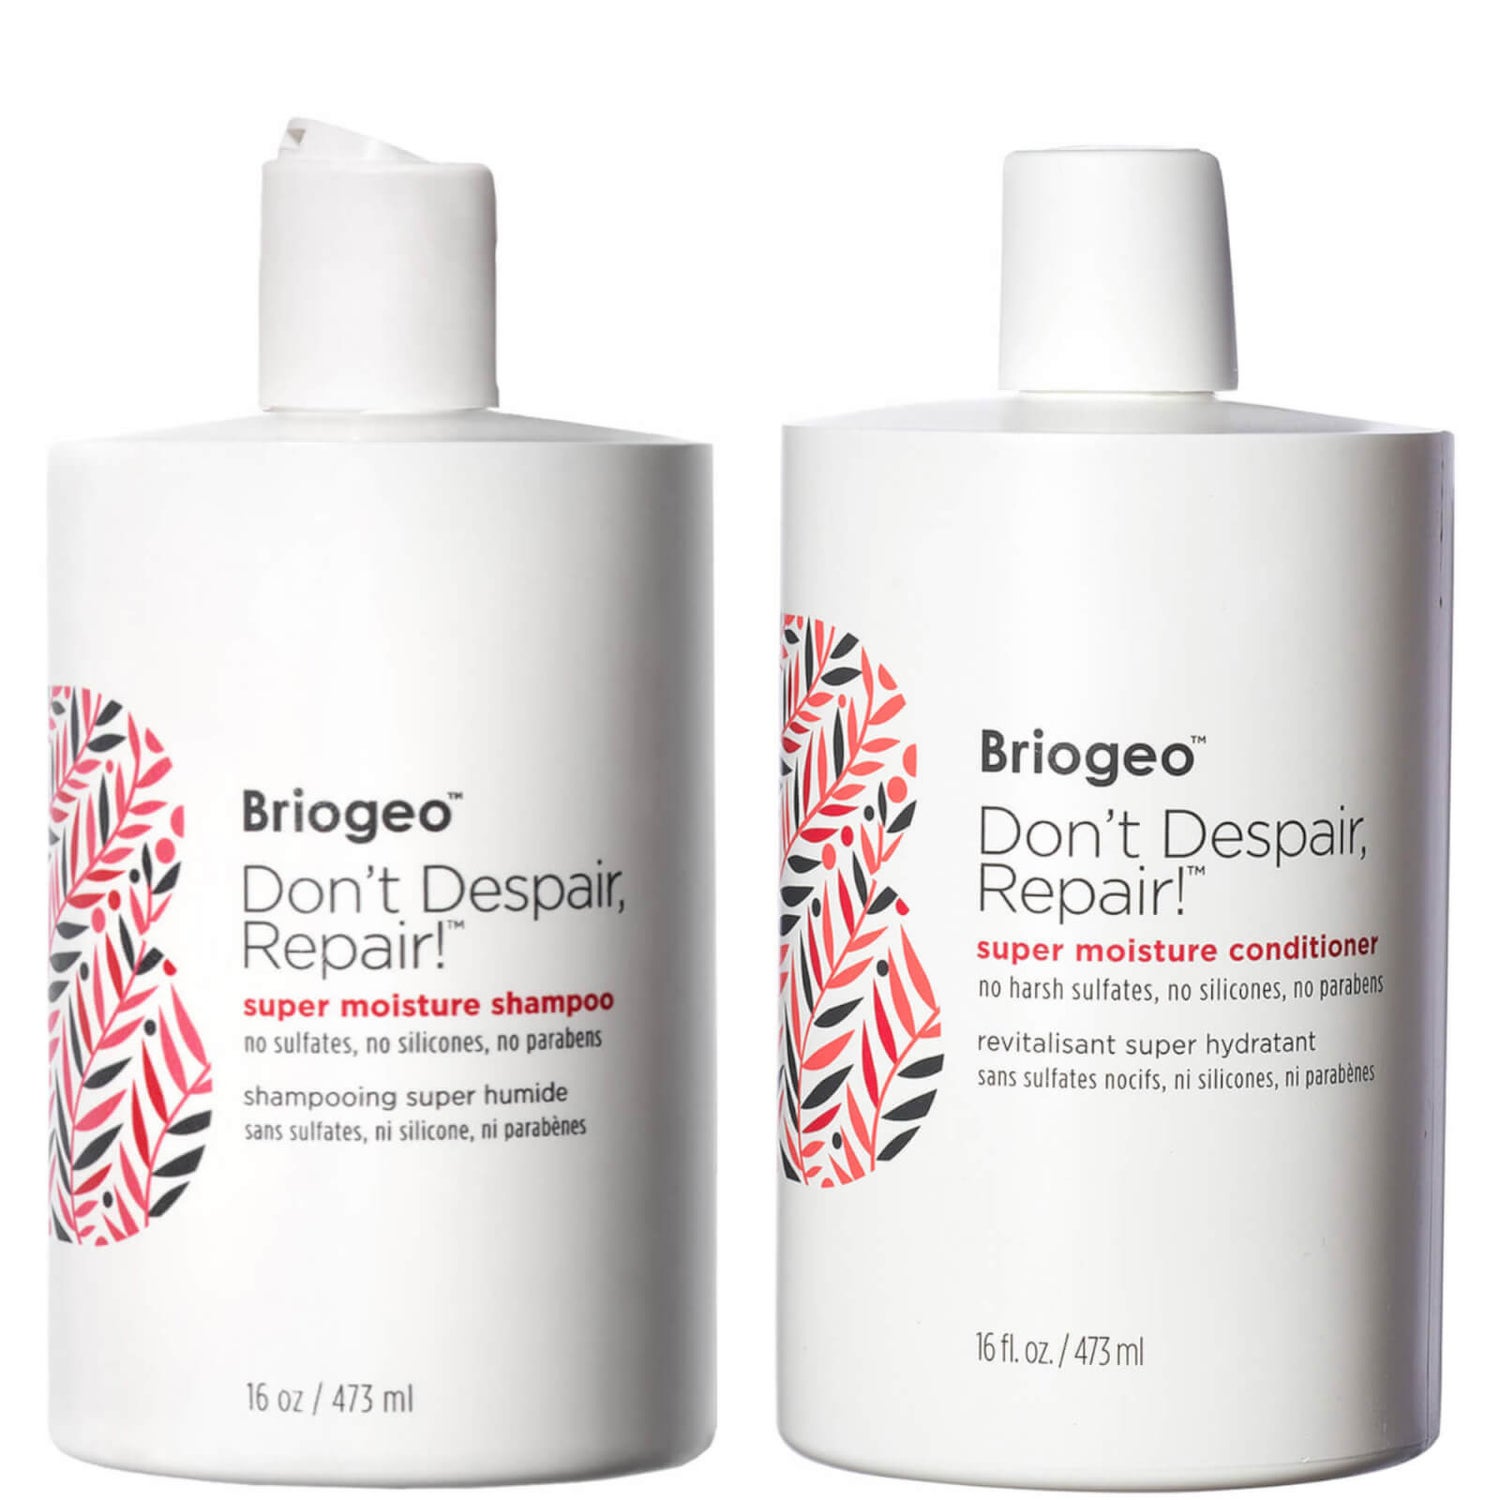 Briogeo Don't Despair, Repair! Super Moisture Shampoo and Conditioner